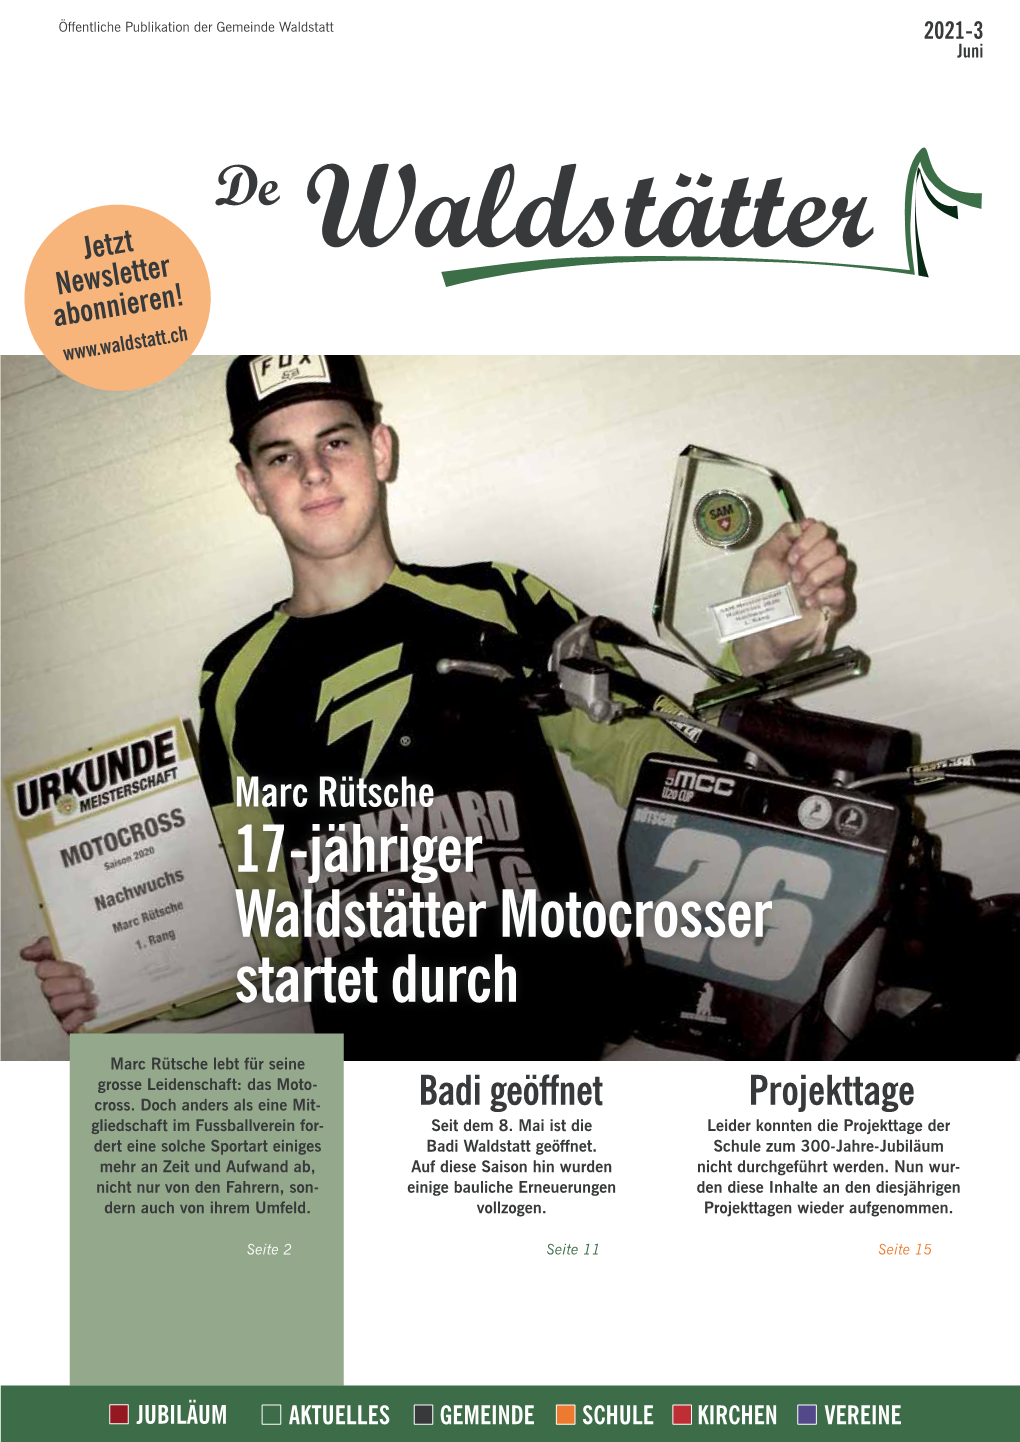 17-Jähriger Waldstätter Motocrosser Startet Durch